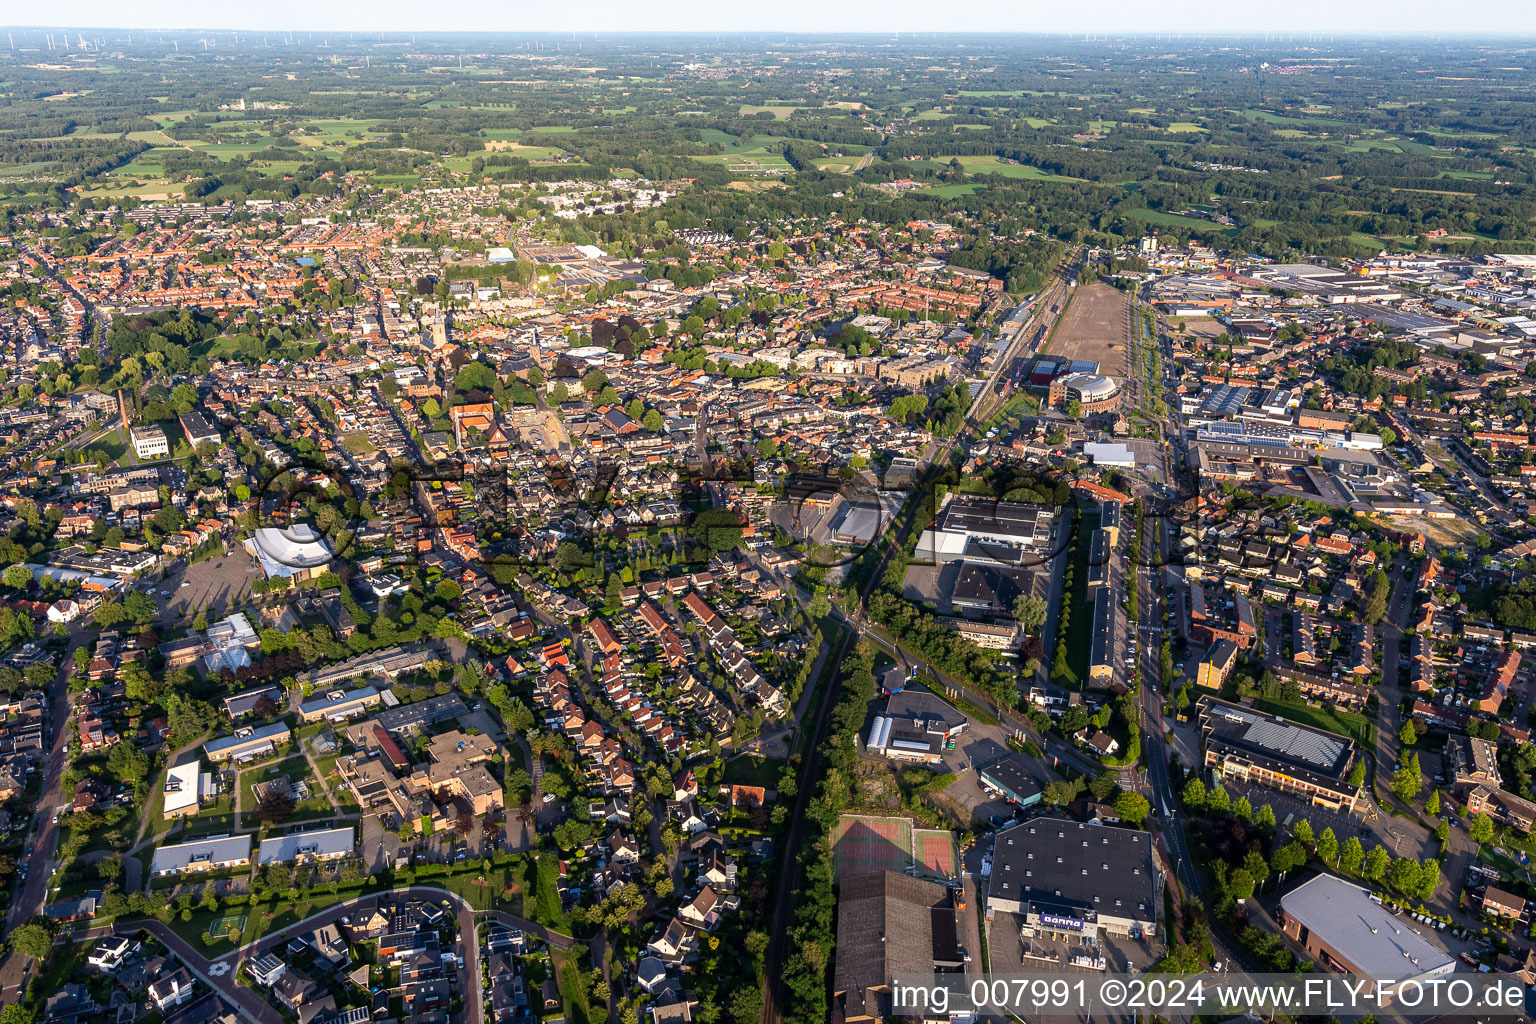 Stadtansicht des Innenstadtbereiches in Winterswijk in Gelderland, Niederlande